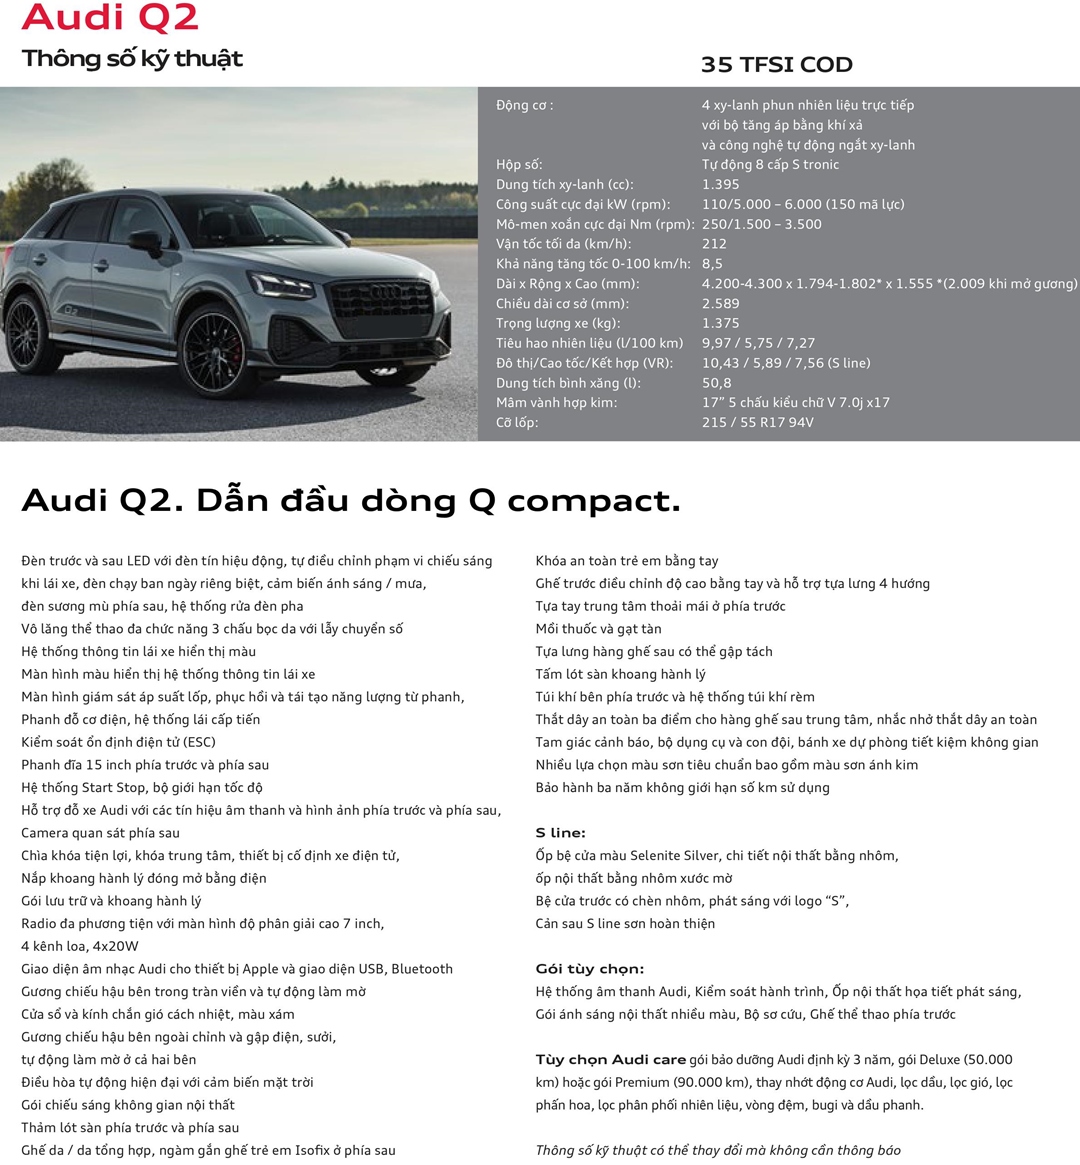 Xe cũ Audi Q2 giá 12 tỉ đồng tại Việt Nam